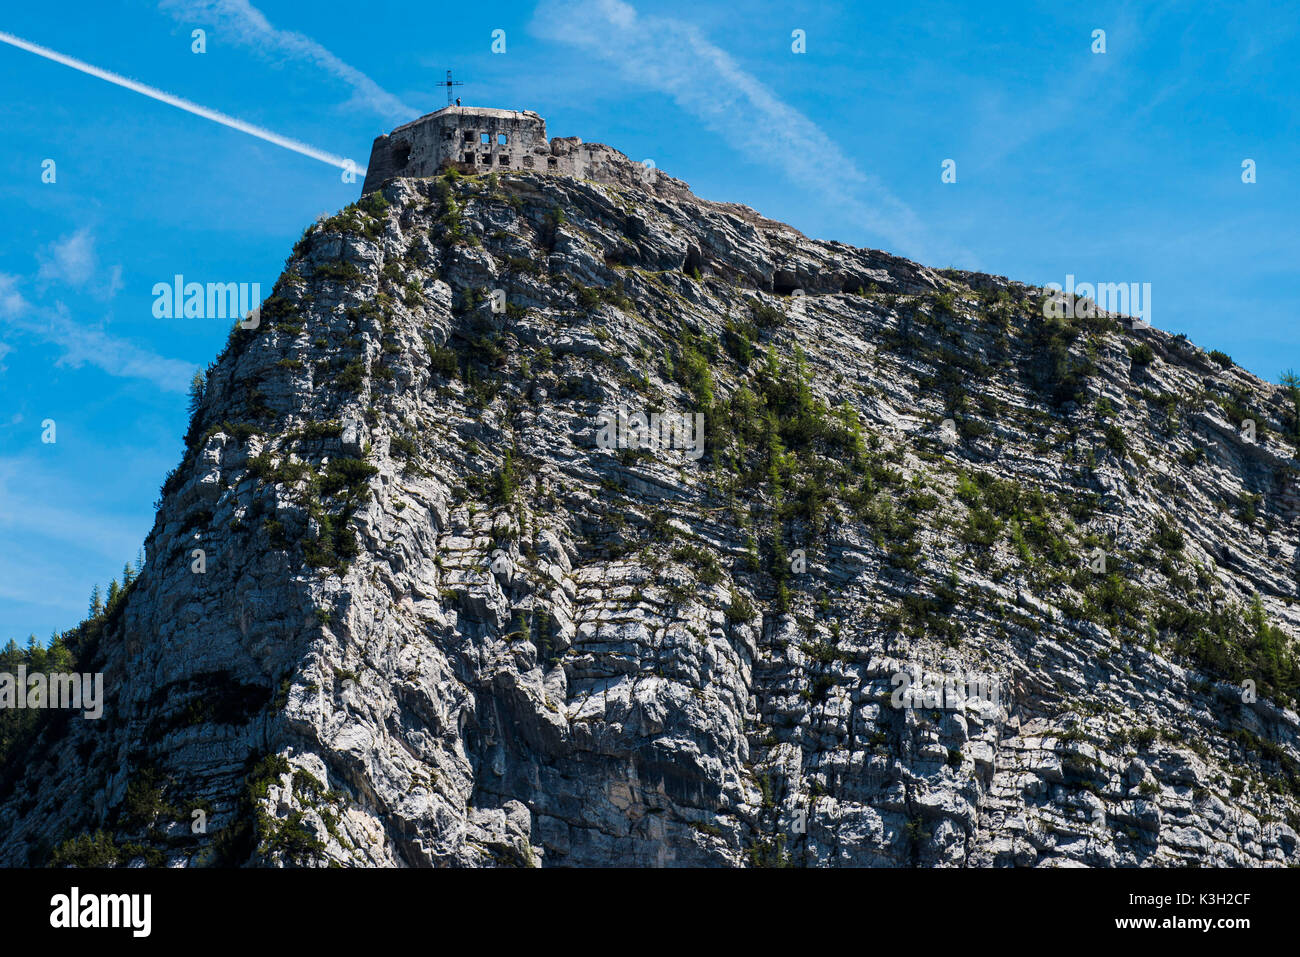 Forteresse de montagne, la ruine, la Cima di Vezzena, Levico, photo aérienne, Valsugana, Trentin, Italie Banque D'Images